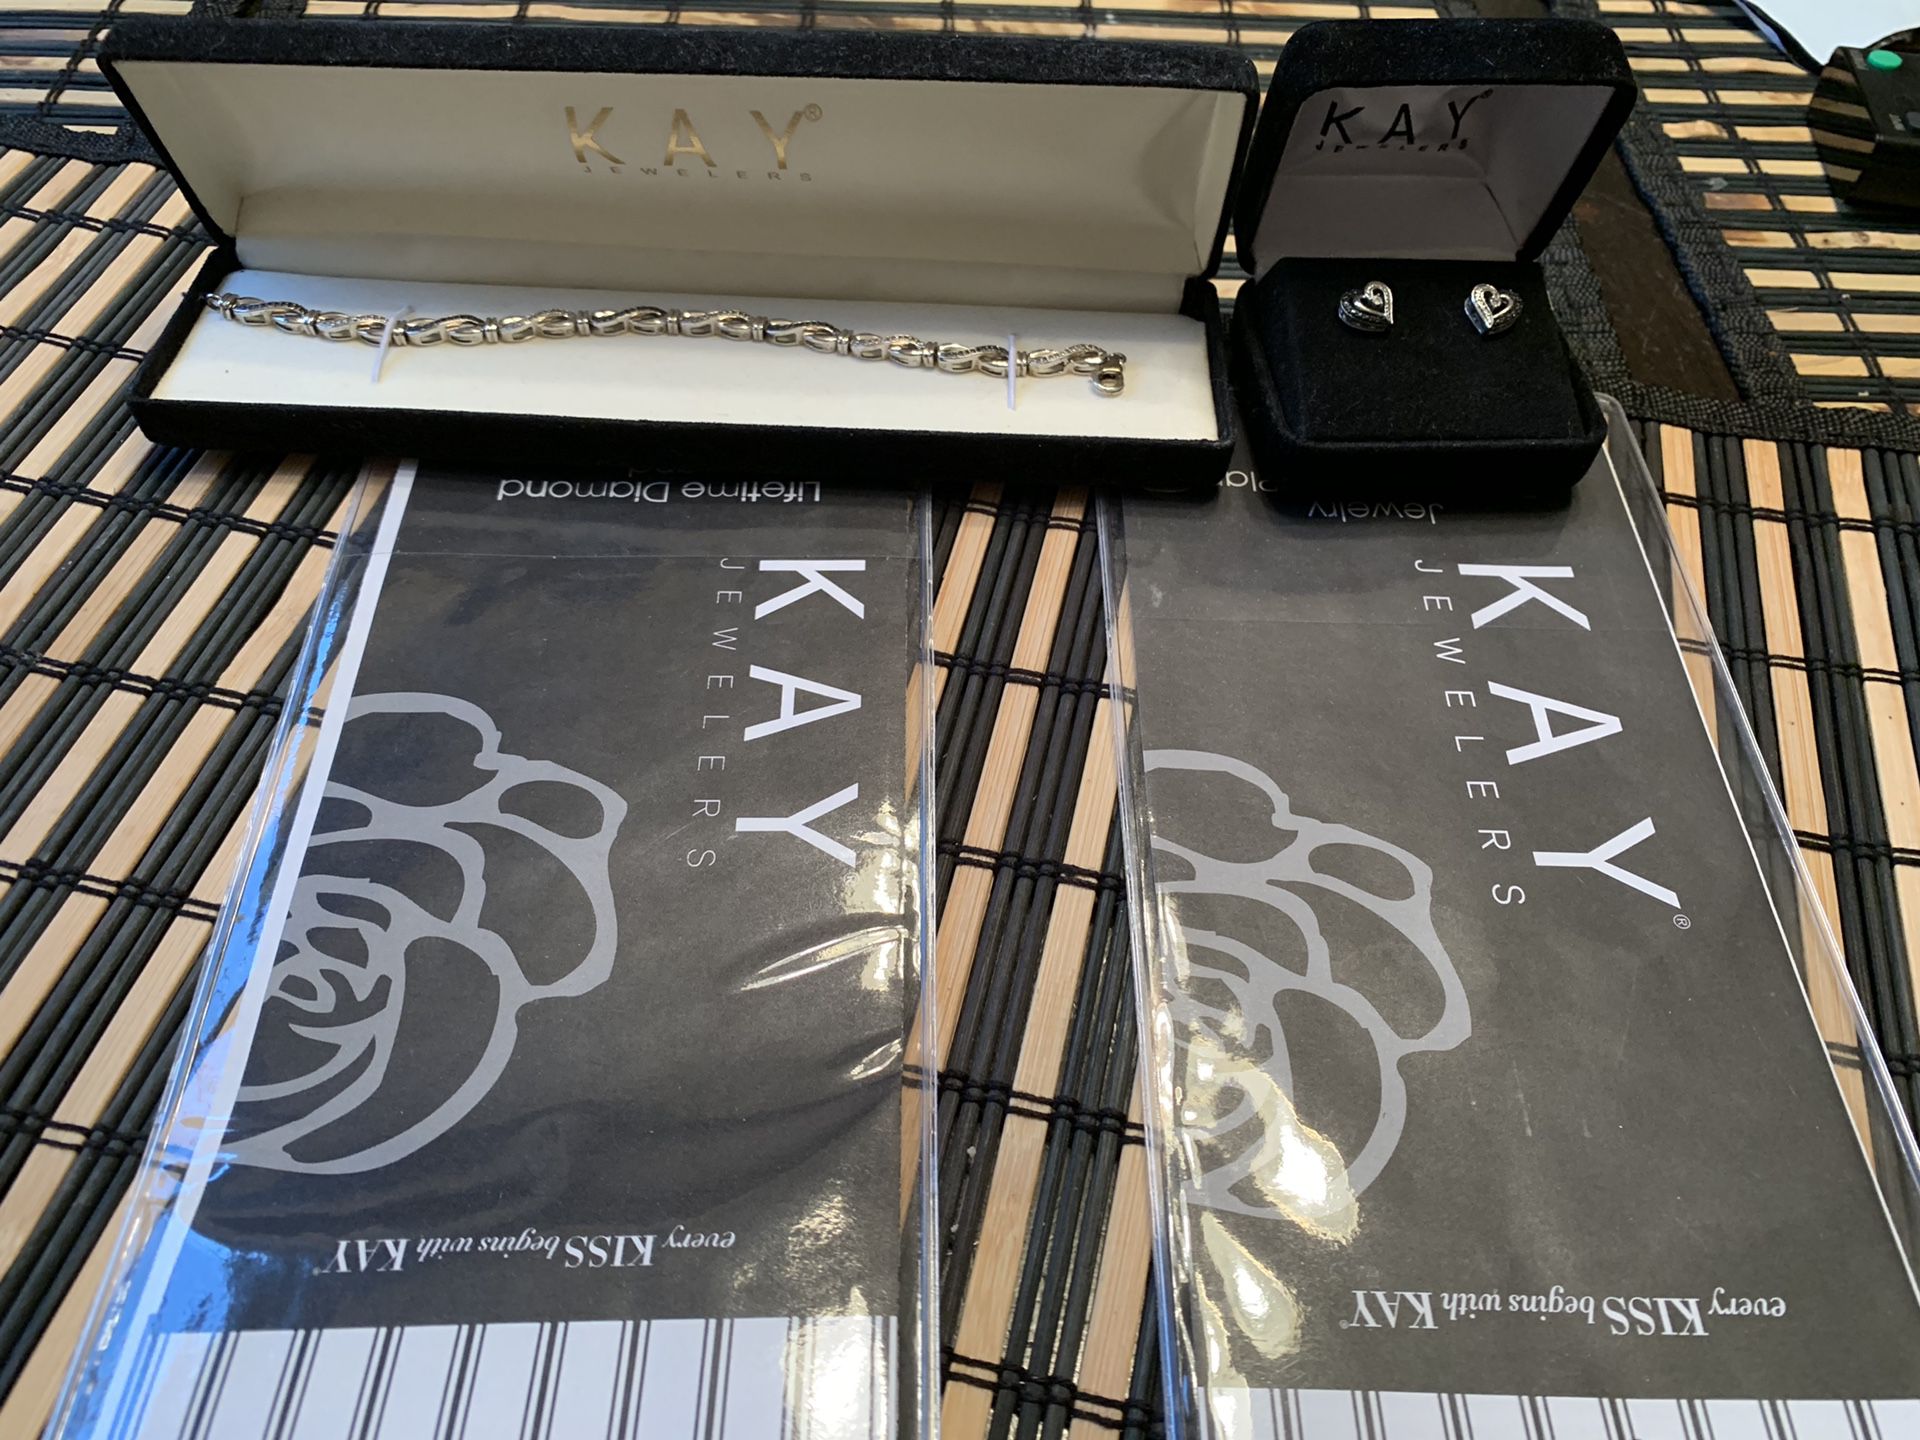 Kay jewelry earrings and bracelet for women’s receipt warranty added